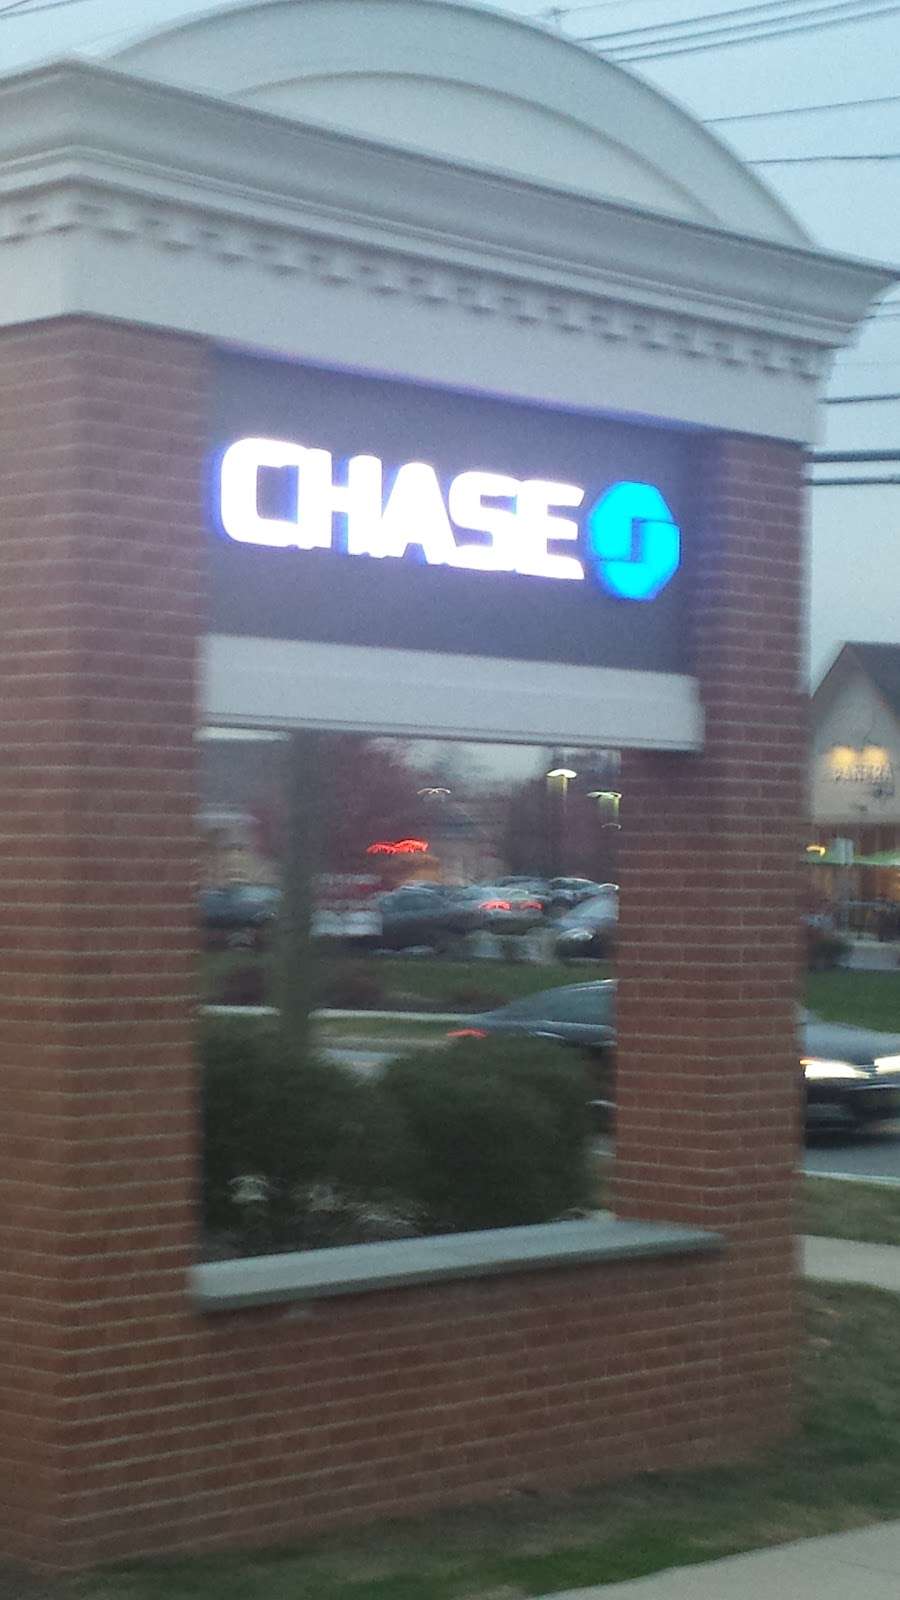 Chase Bank | 460 Elizabeth Ave, Somerset, NJ 08873 | Phone: (732) 356-5819